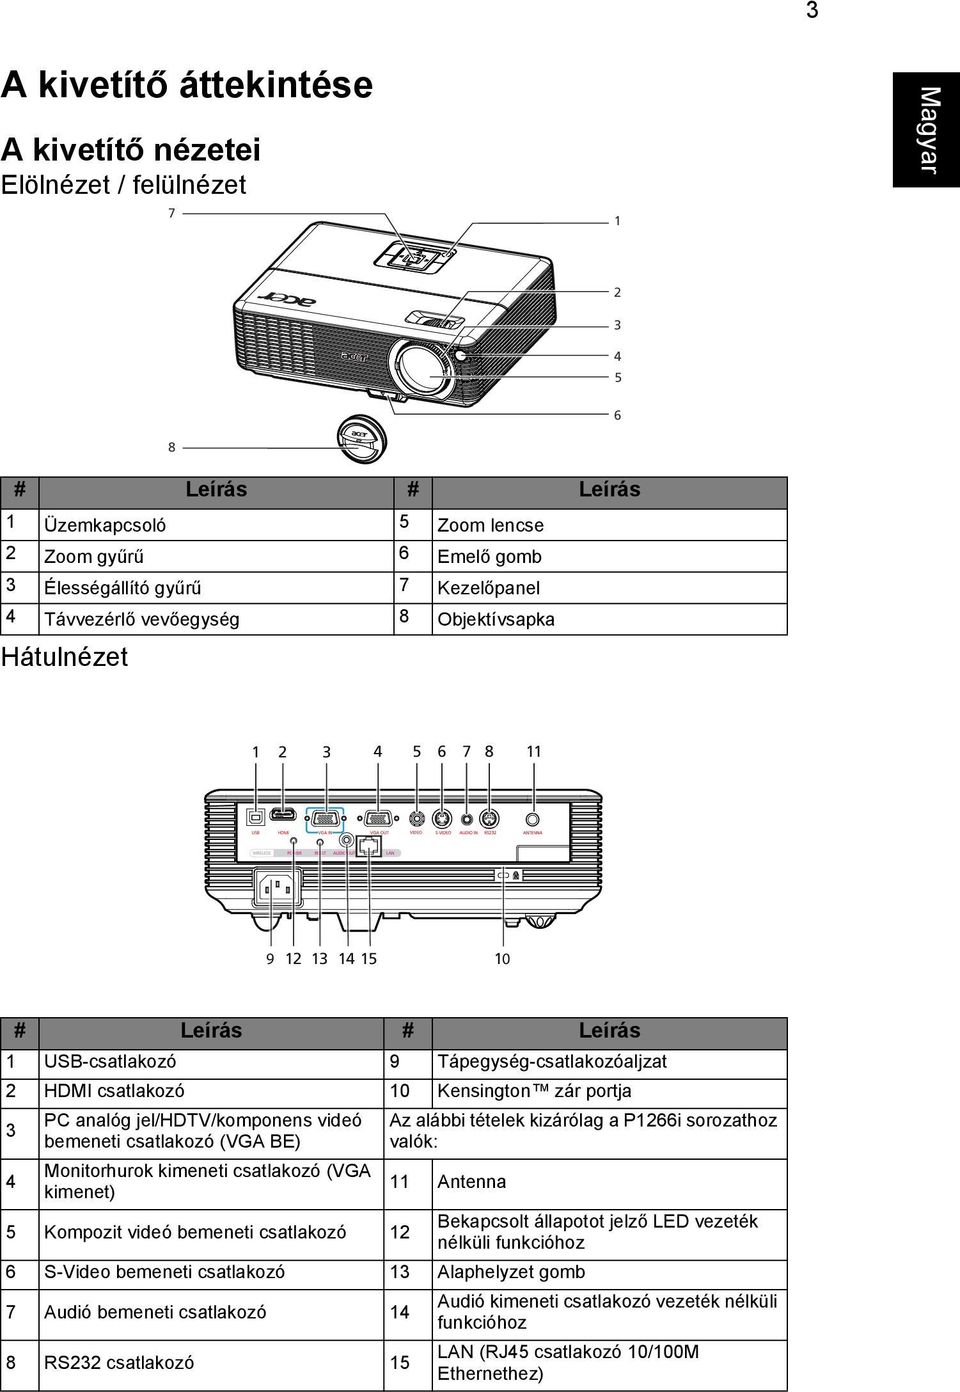 analóg jel/hdtv/komponens videó bemeneti csatlakozó (VGA BE) Az alábbi tételek kizárólag a P1266i sorozathoz valók: 4 Monitorhurok kimeneti csatlakozó (VGA 11 kimenet) Antenna 5 Kompozit videó